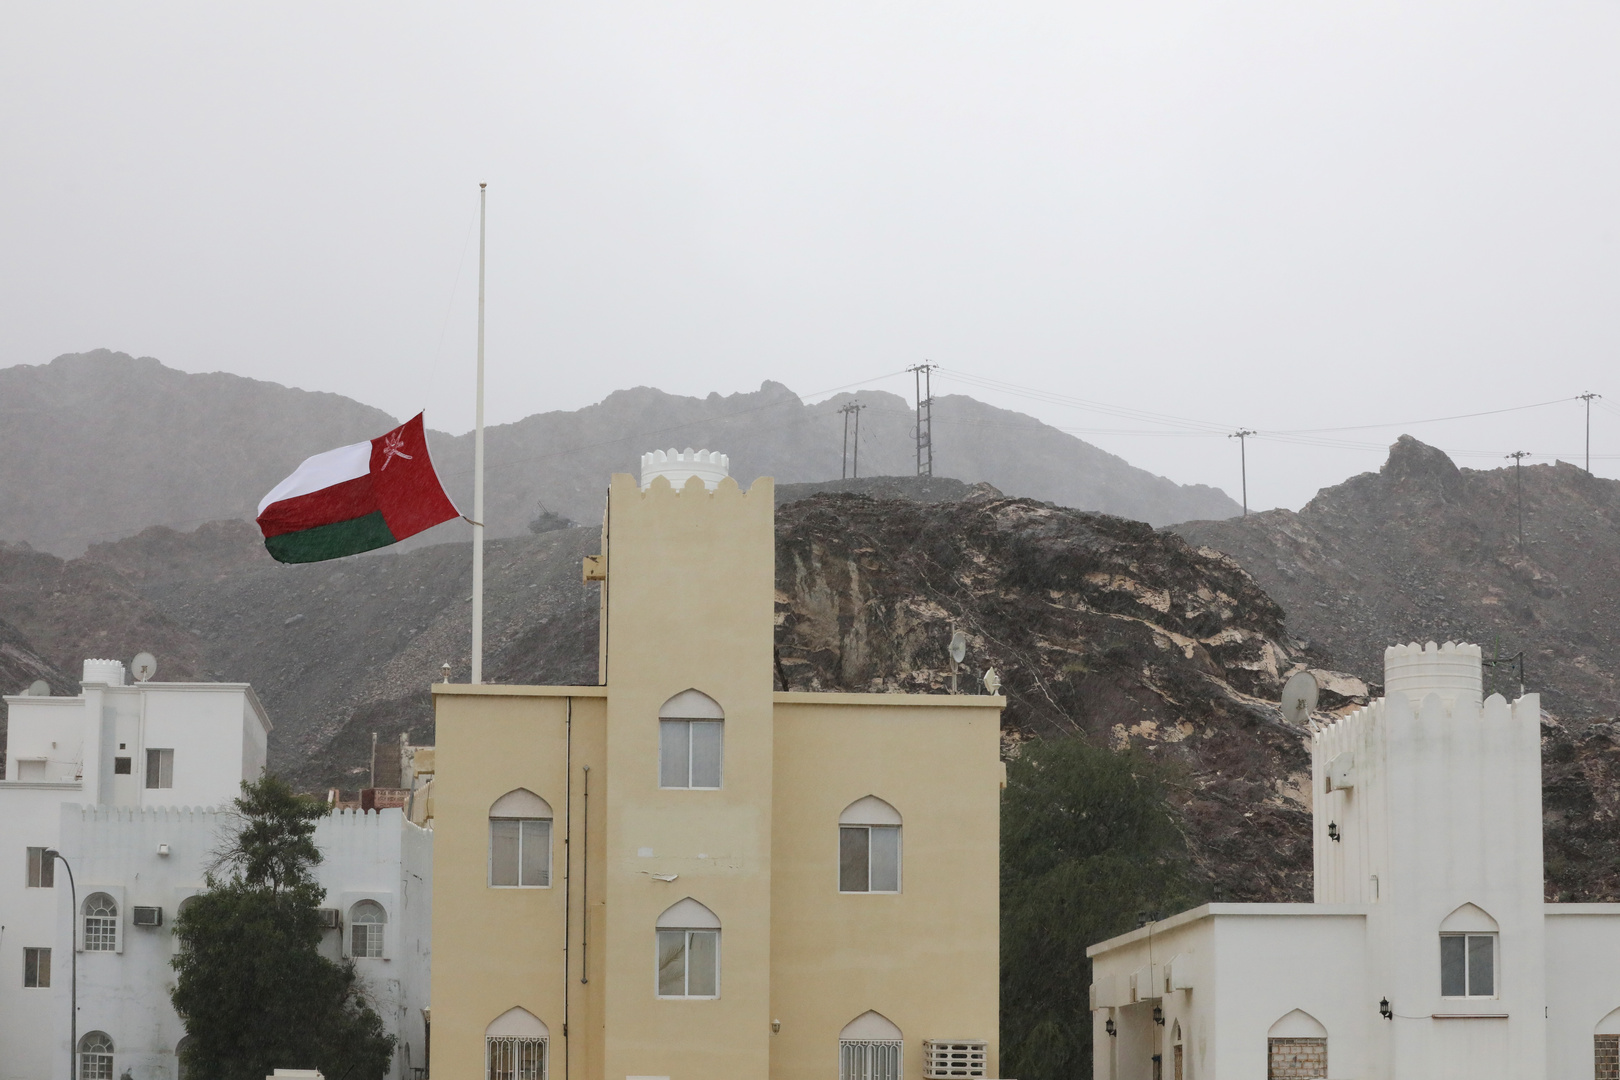 سلطنة عمان تغلق حدودها البرية مرة أخرى للحد من انتشار كورونا